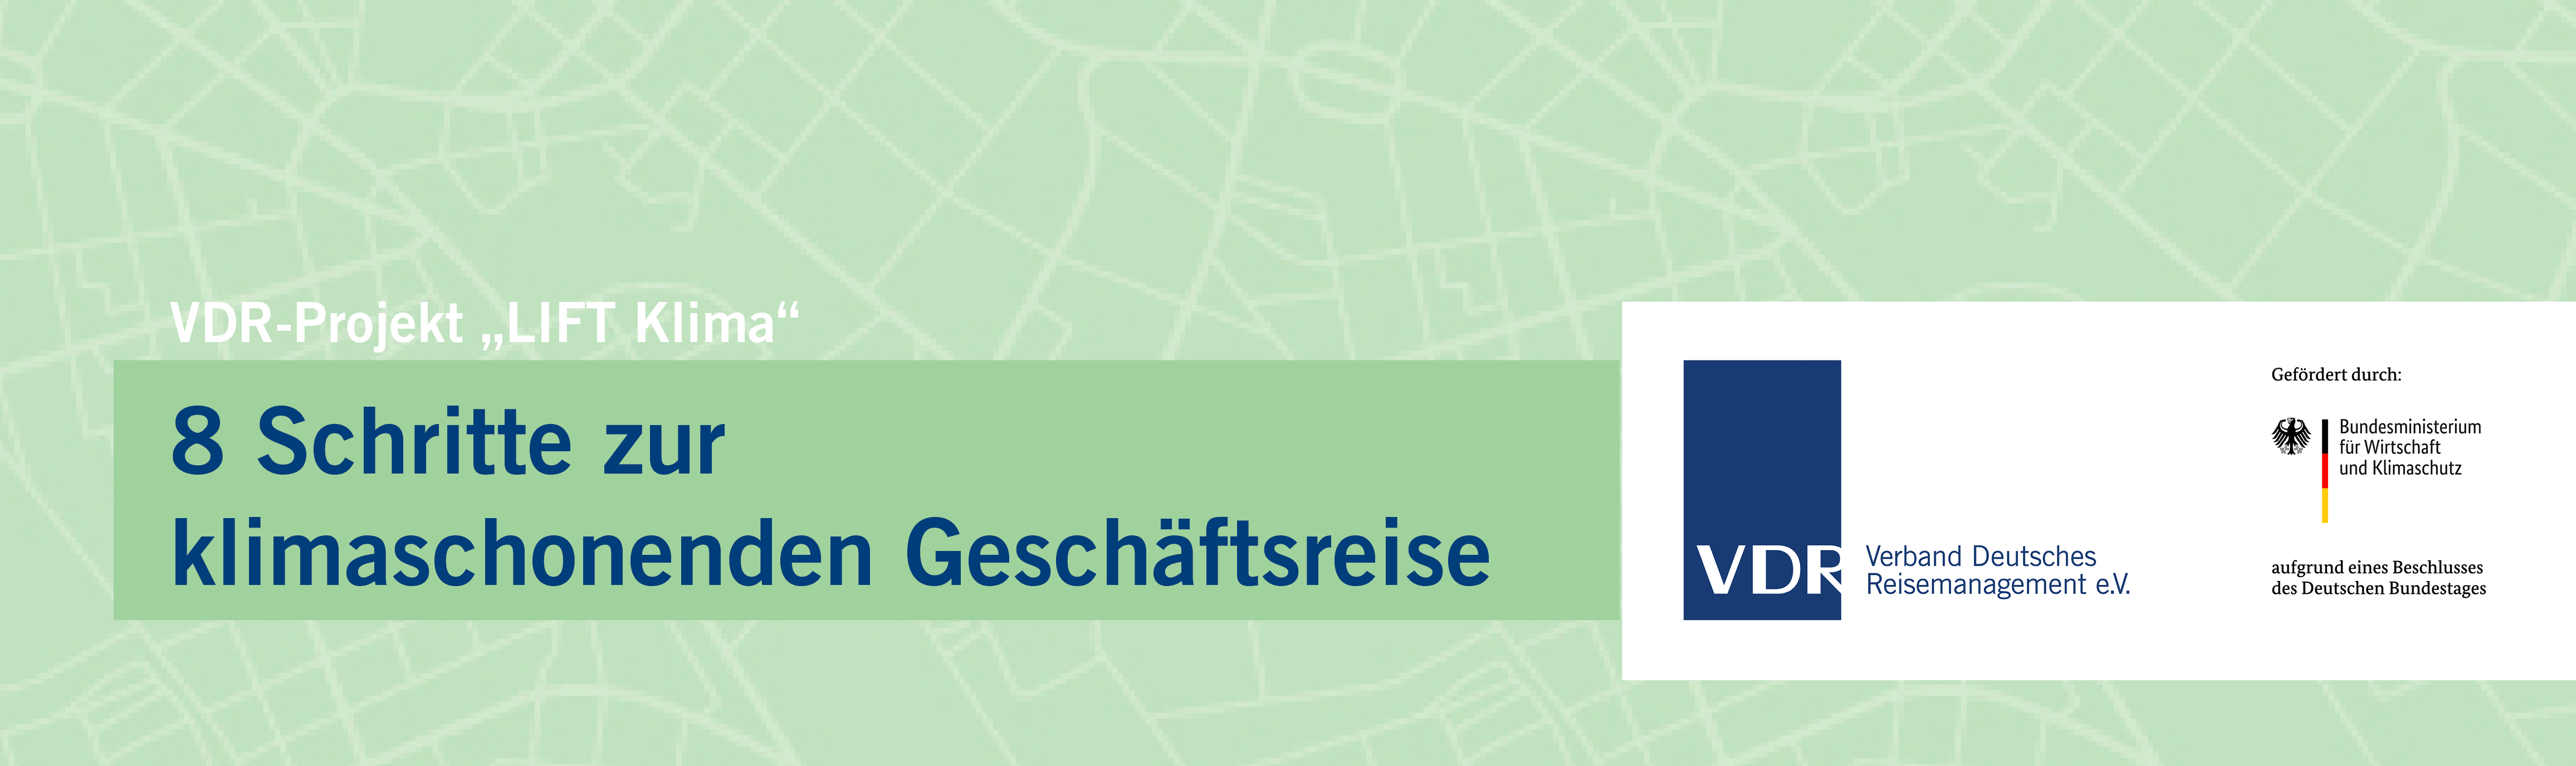 Prozess klimaschonende Geschäftsreise | Verband Deutsches Reisemanagement (VDR)